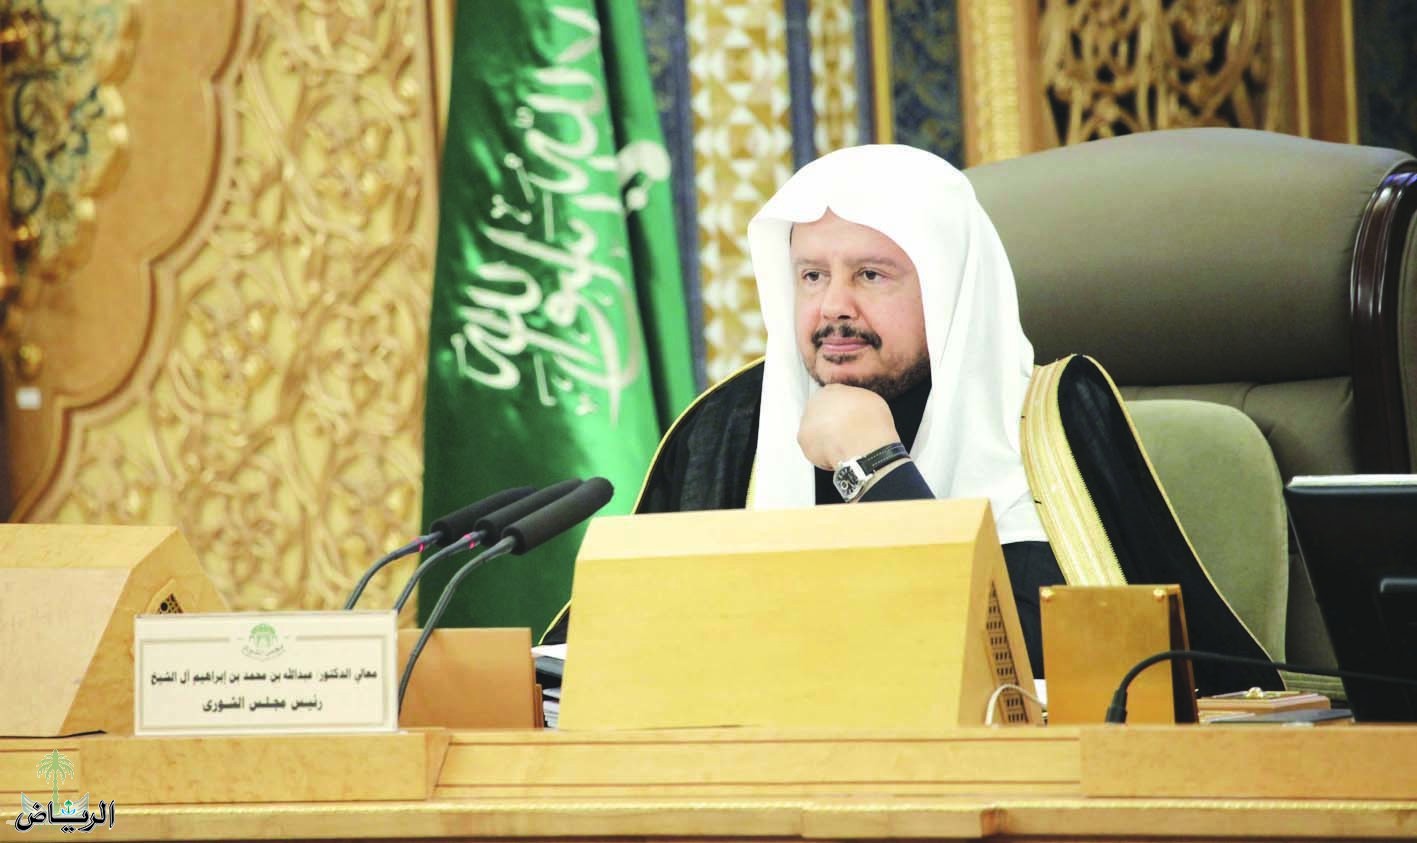 Le Secrétaire Général Félicite le Président du Conseil Saoudien